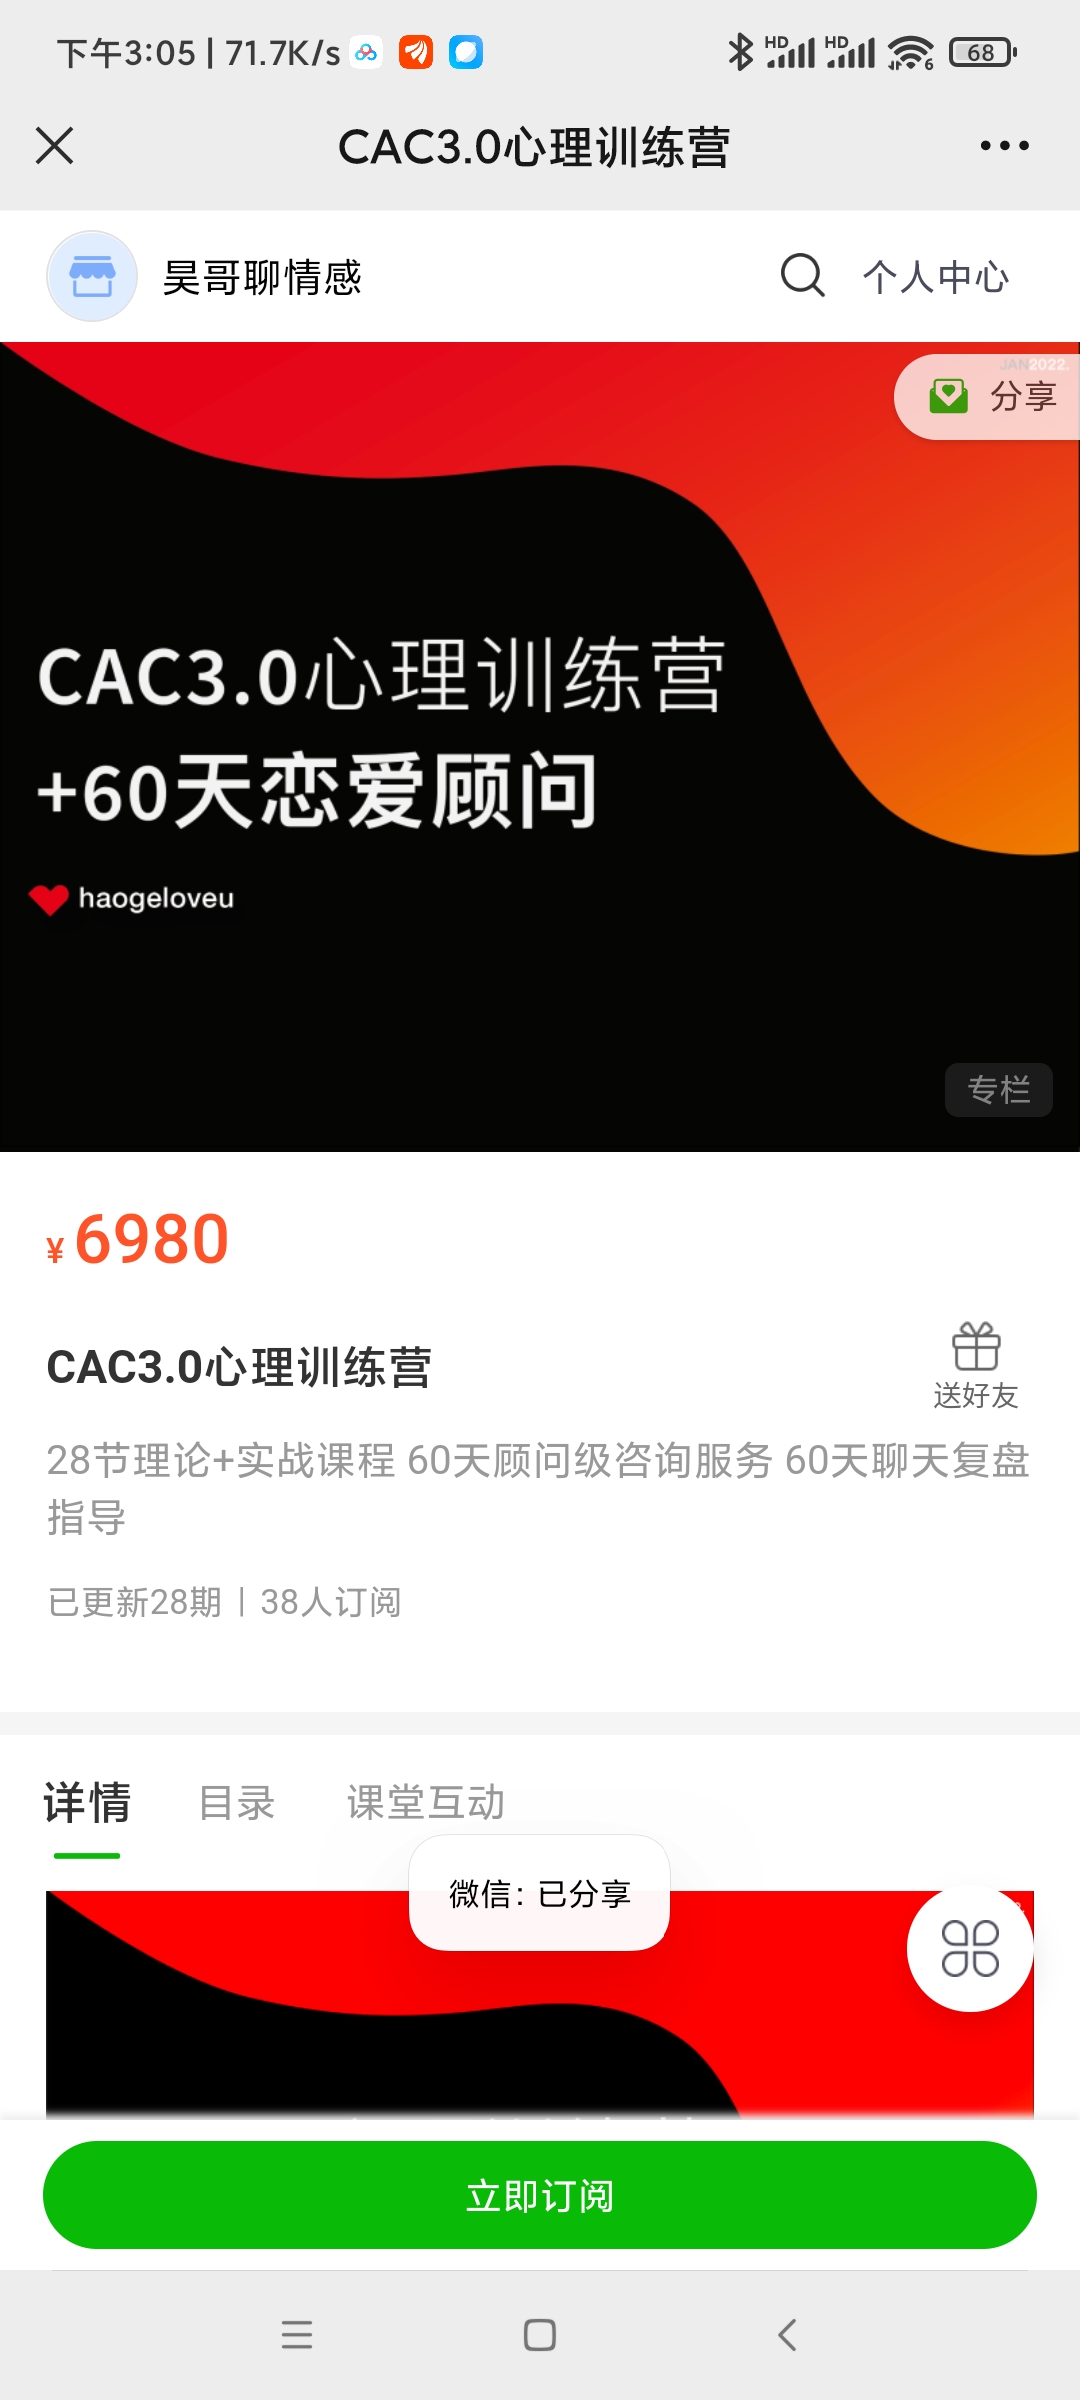 【更新】 昊哥《CAC 3.0 心理训练营》